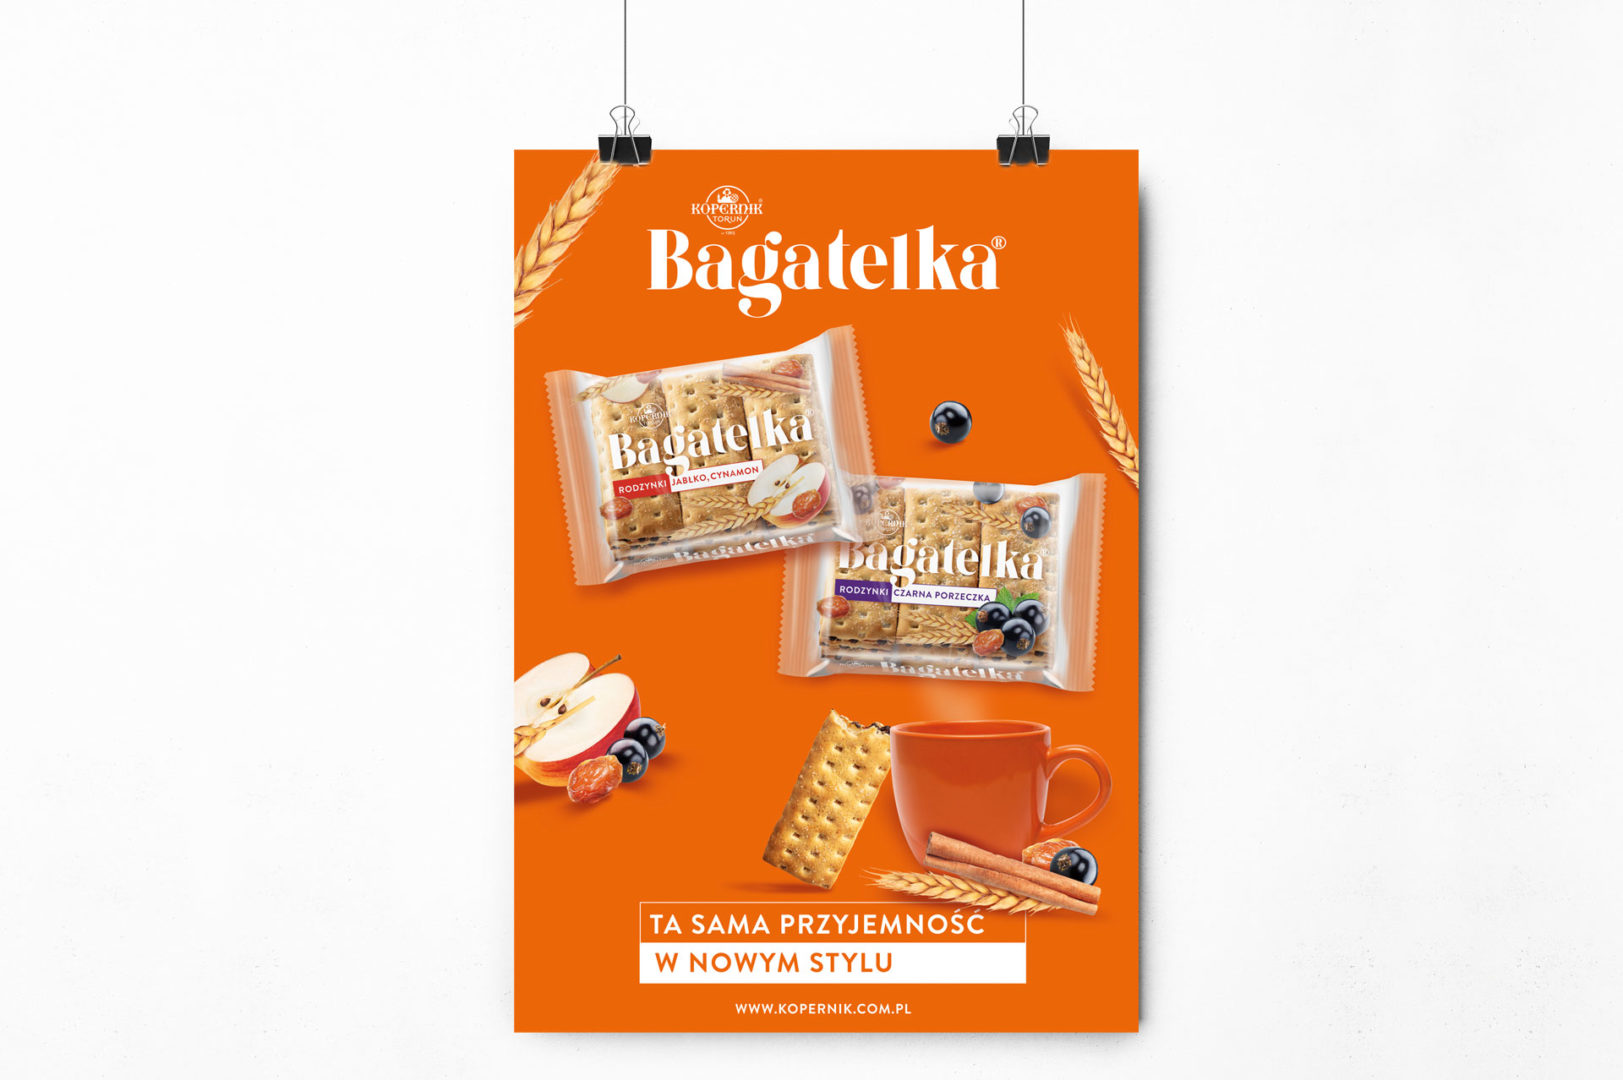 BAGATELKA_projekt_opakowania_branding_packaging_08